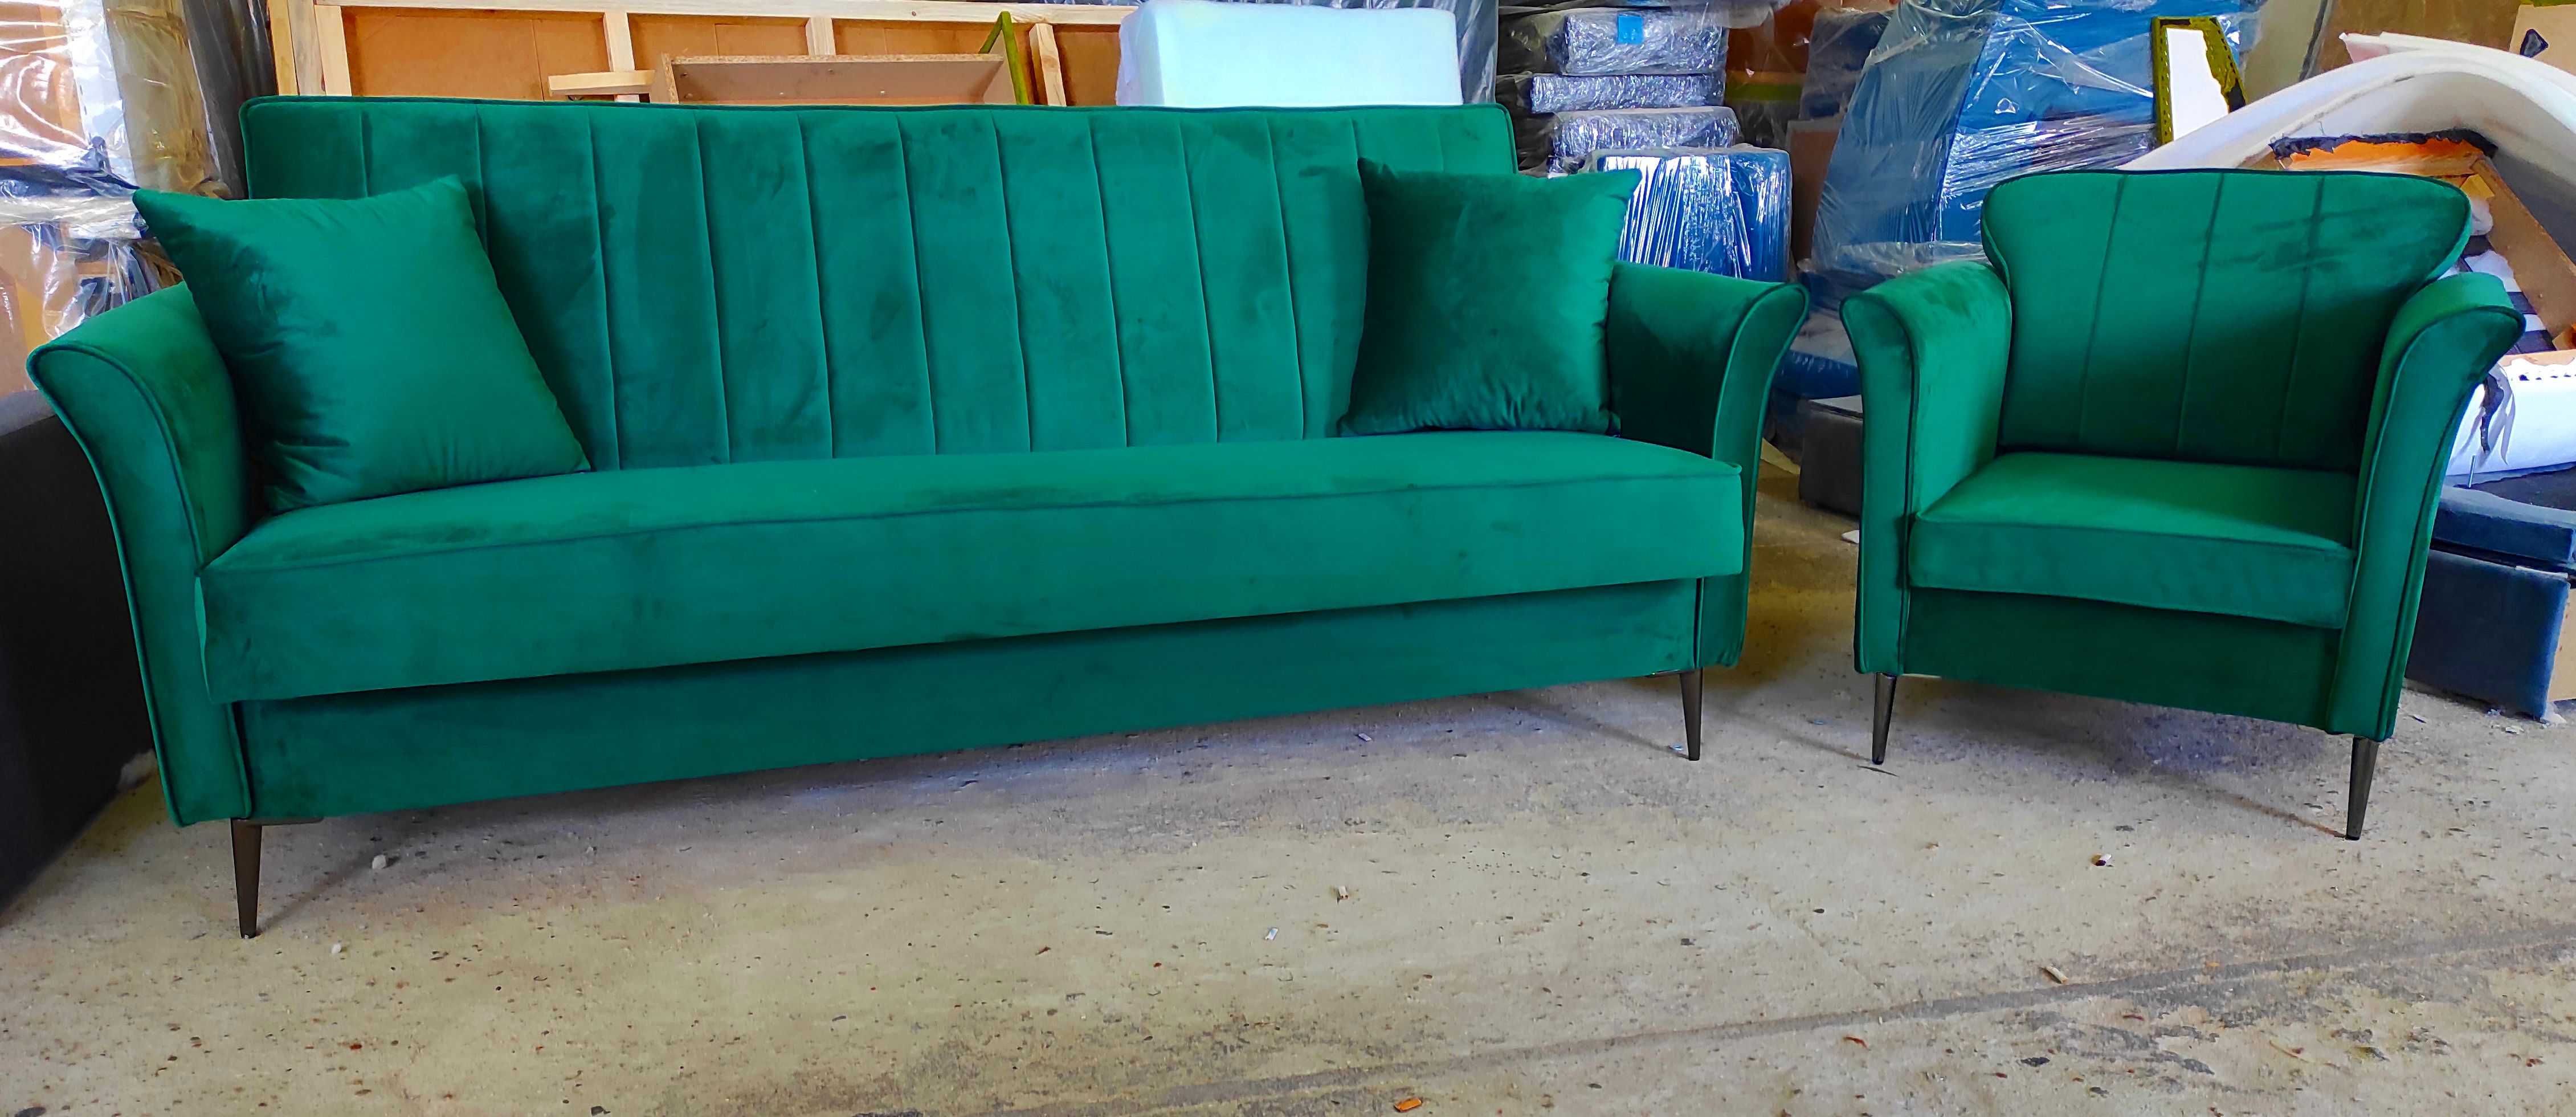 RATY komplet design sofa rozkładana fotel zestaw skandynawski uszak